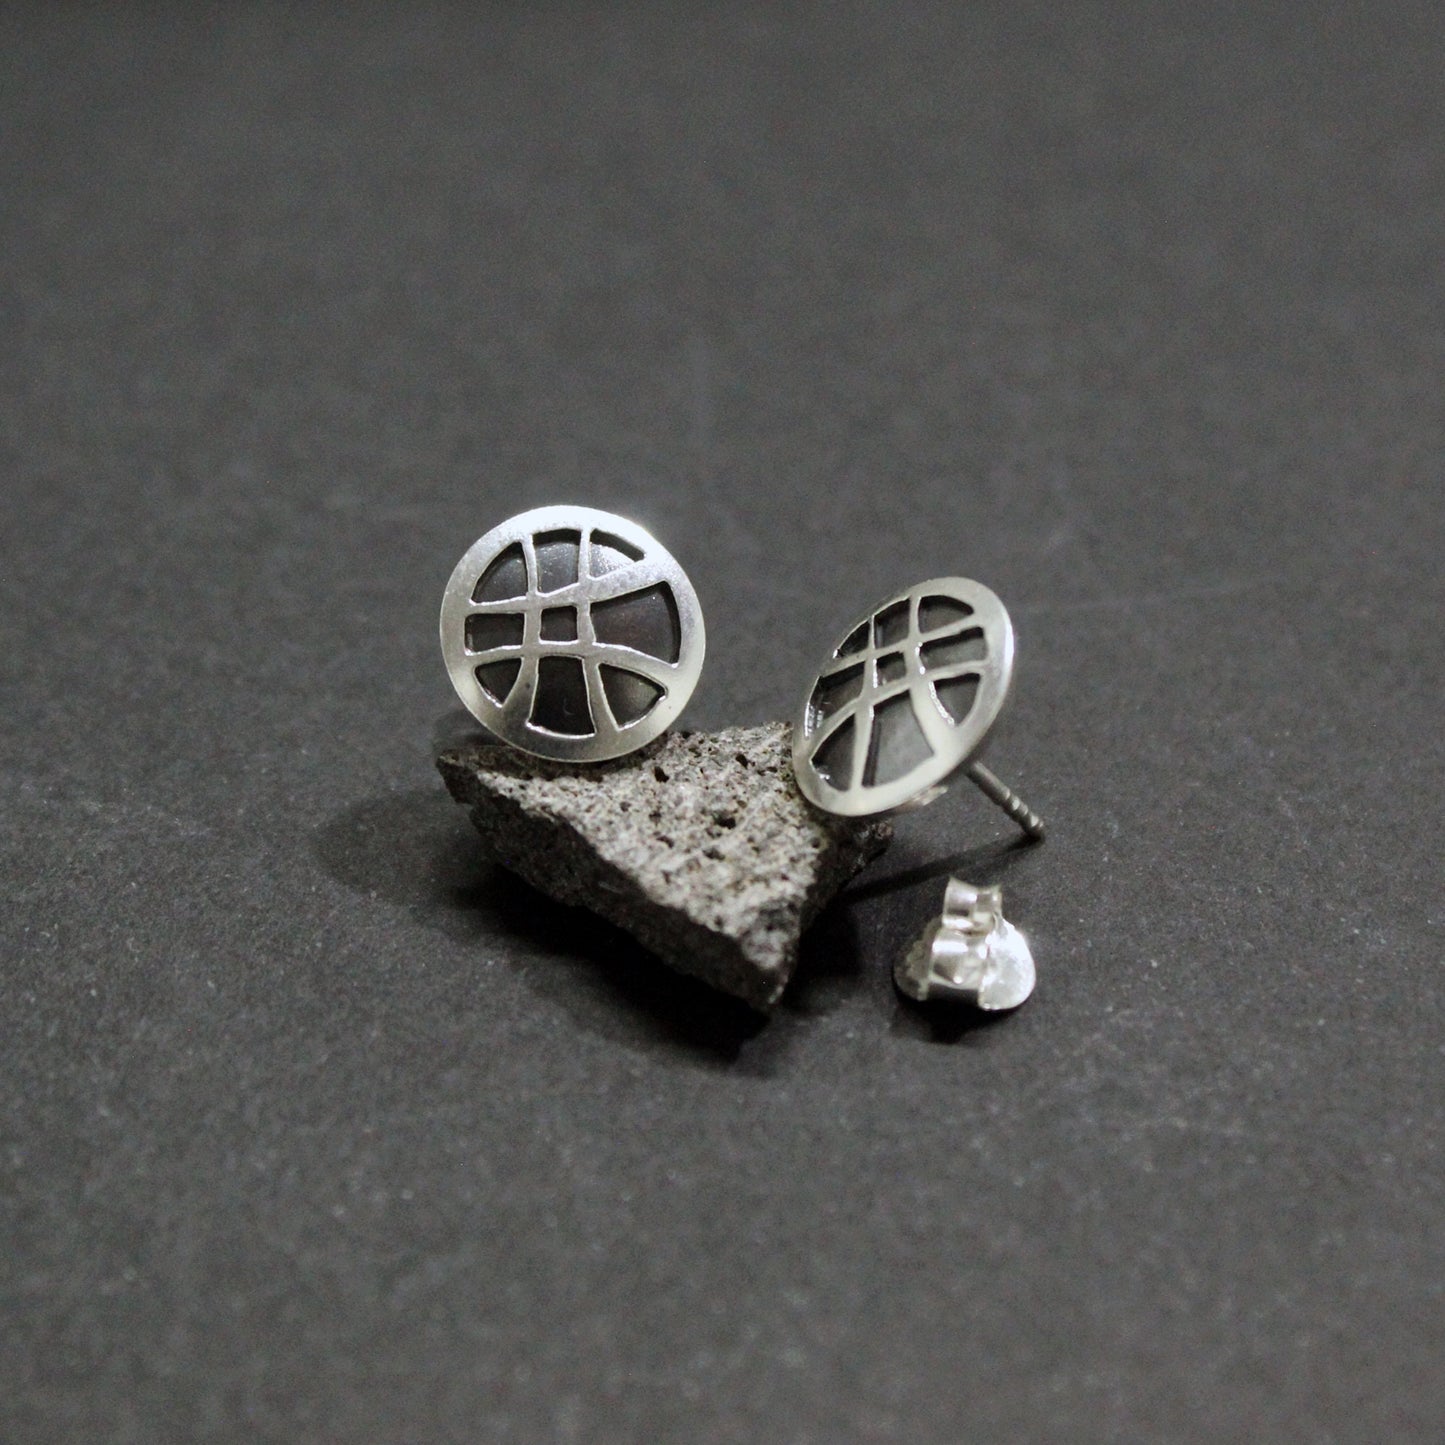 Doctor Strange earrings, Seal of Vishanti in 925 silver